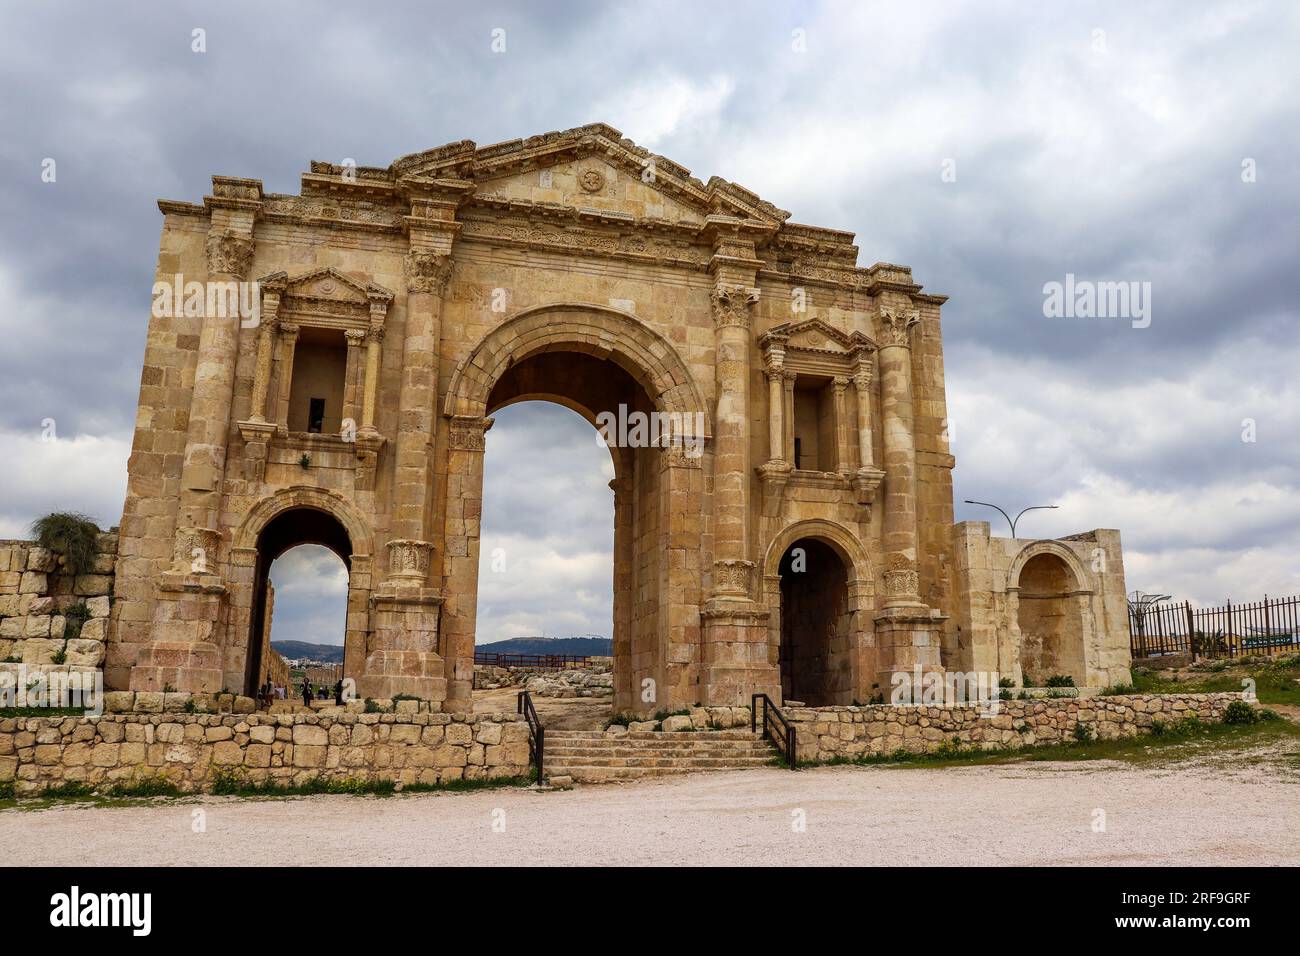 Jerash, Jordanie : Tourisme au Moyen-Orient - Arc d'Hadrien dans la ville historique de Jerash (ville grecque romaine) Banque D'Images